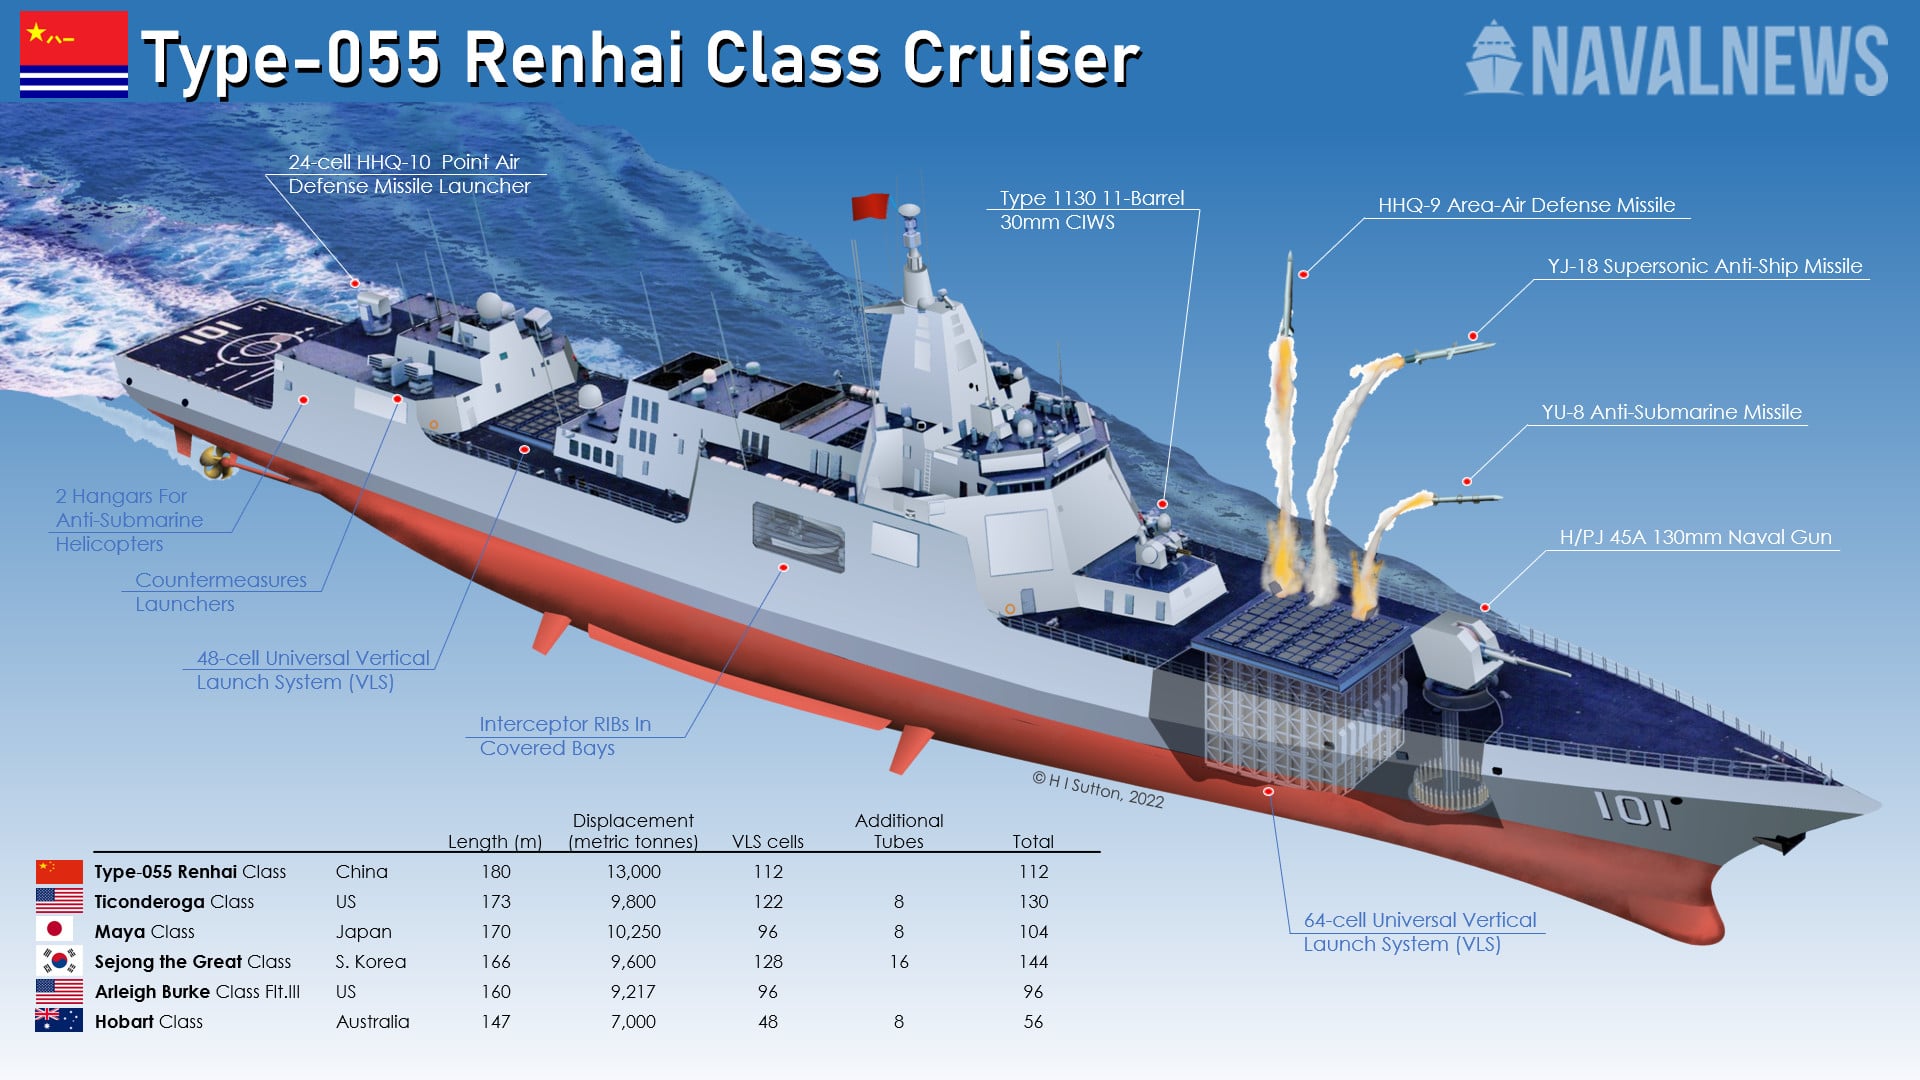 https://www.navalnews.com/wp-content/uploads/2022/01/Chinese-Navy-Type-055-Renai-Class-Cruiser.jpg